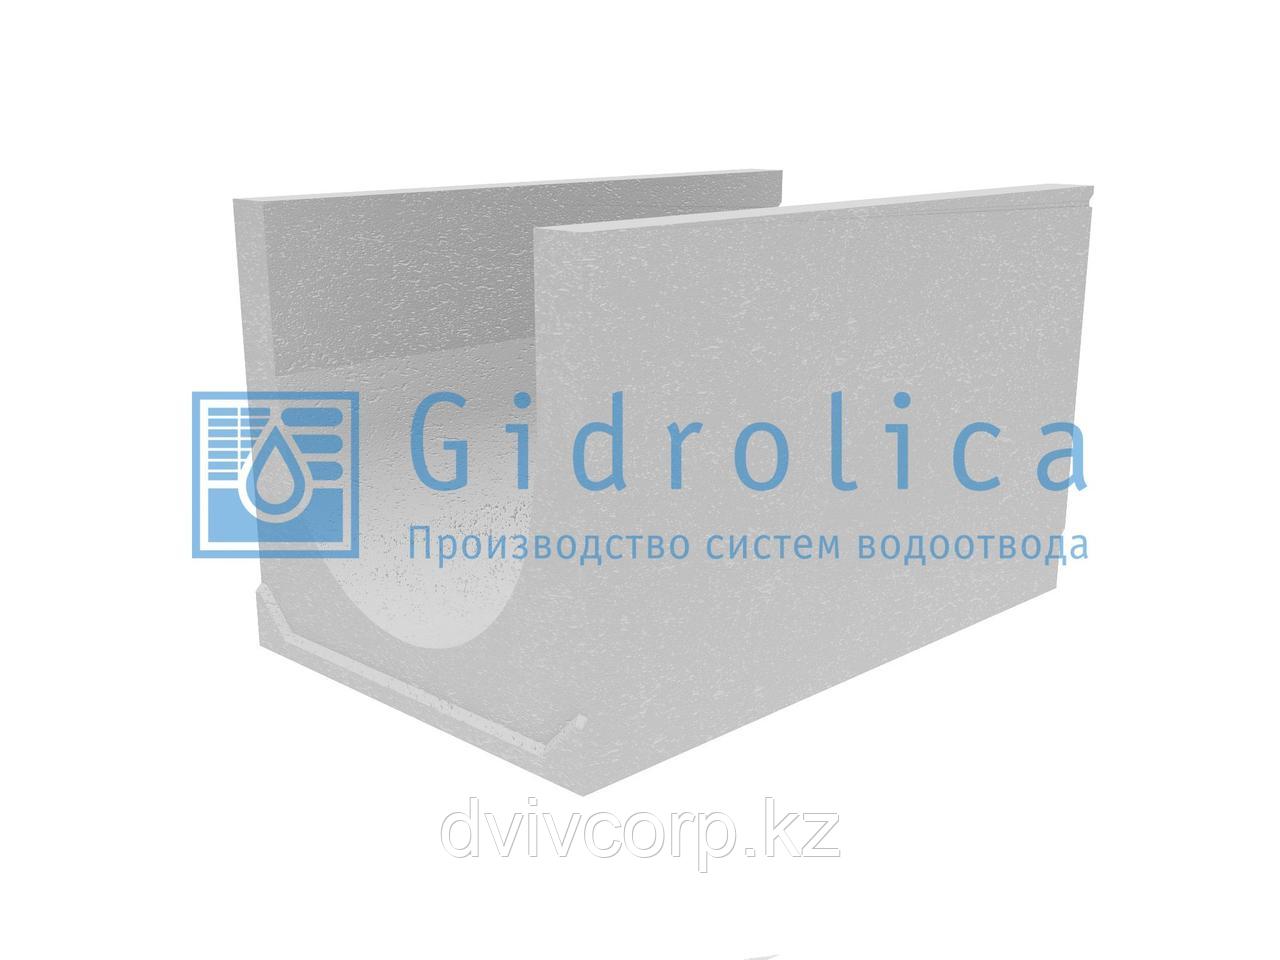 Лоток водоотводный бетонный коробчатый (СО-500мм), с уклоном 0,5%  КUу 100.65(50).60(51) - BGU-XL, № 30